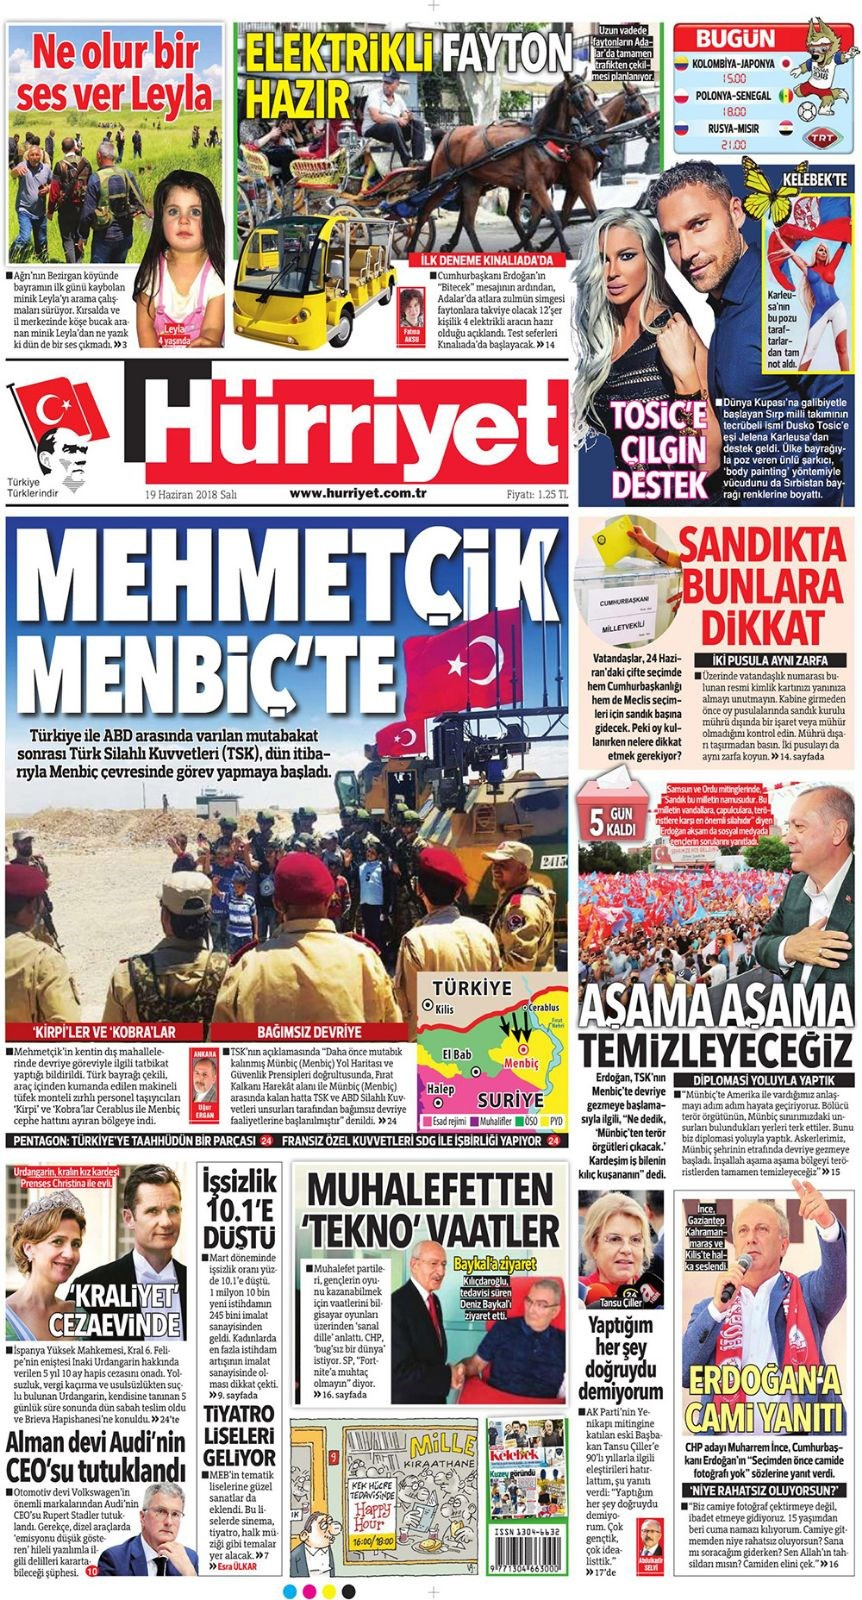 Gazete manşetleri 19 Haziran 2018 Hürriyet - Sözcü - Habertürk